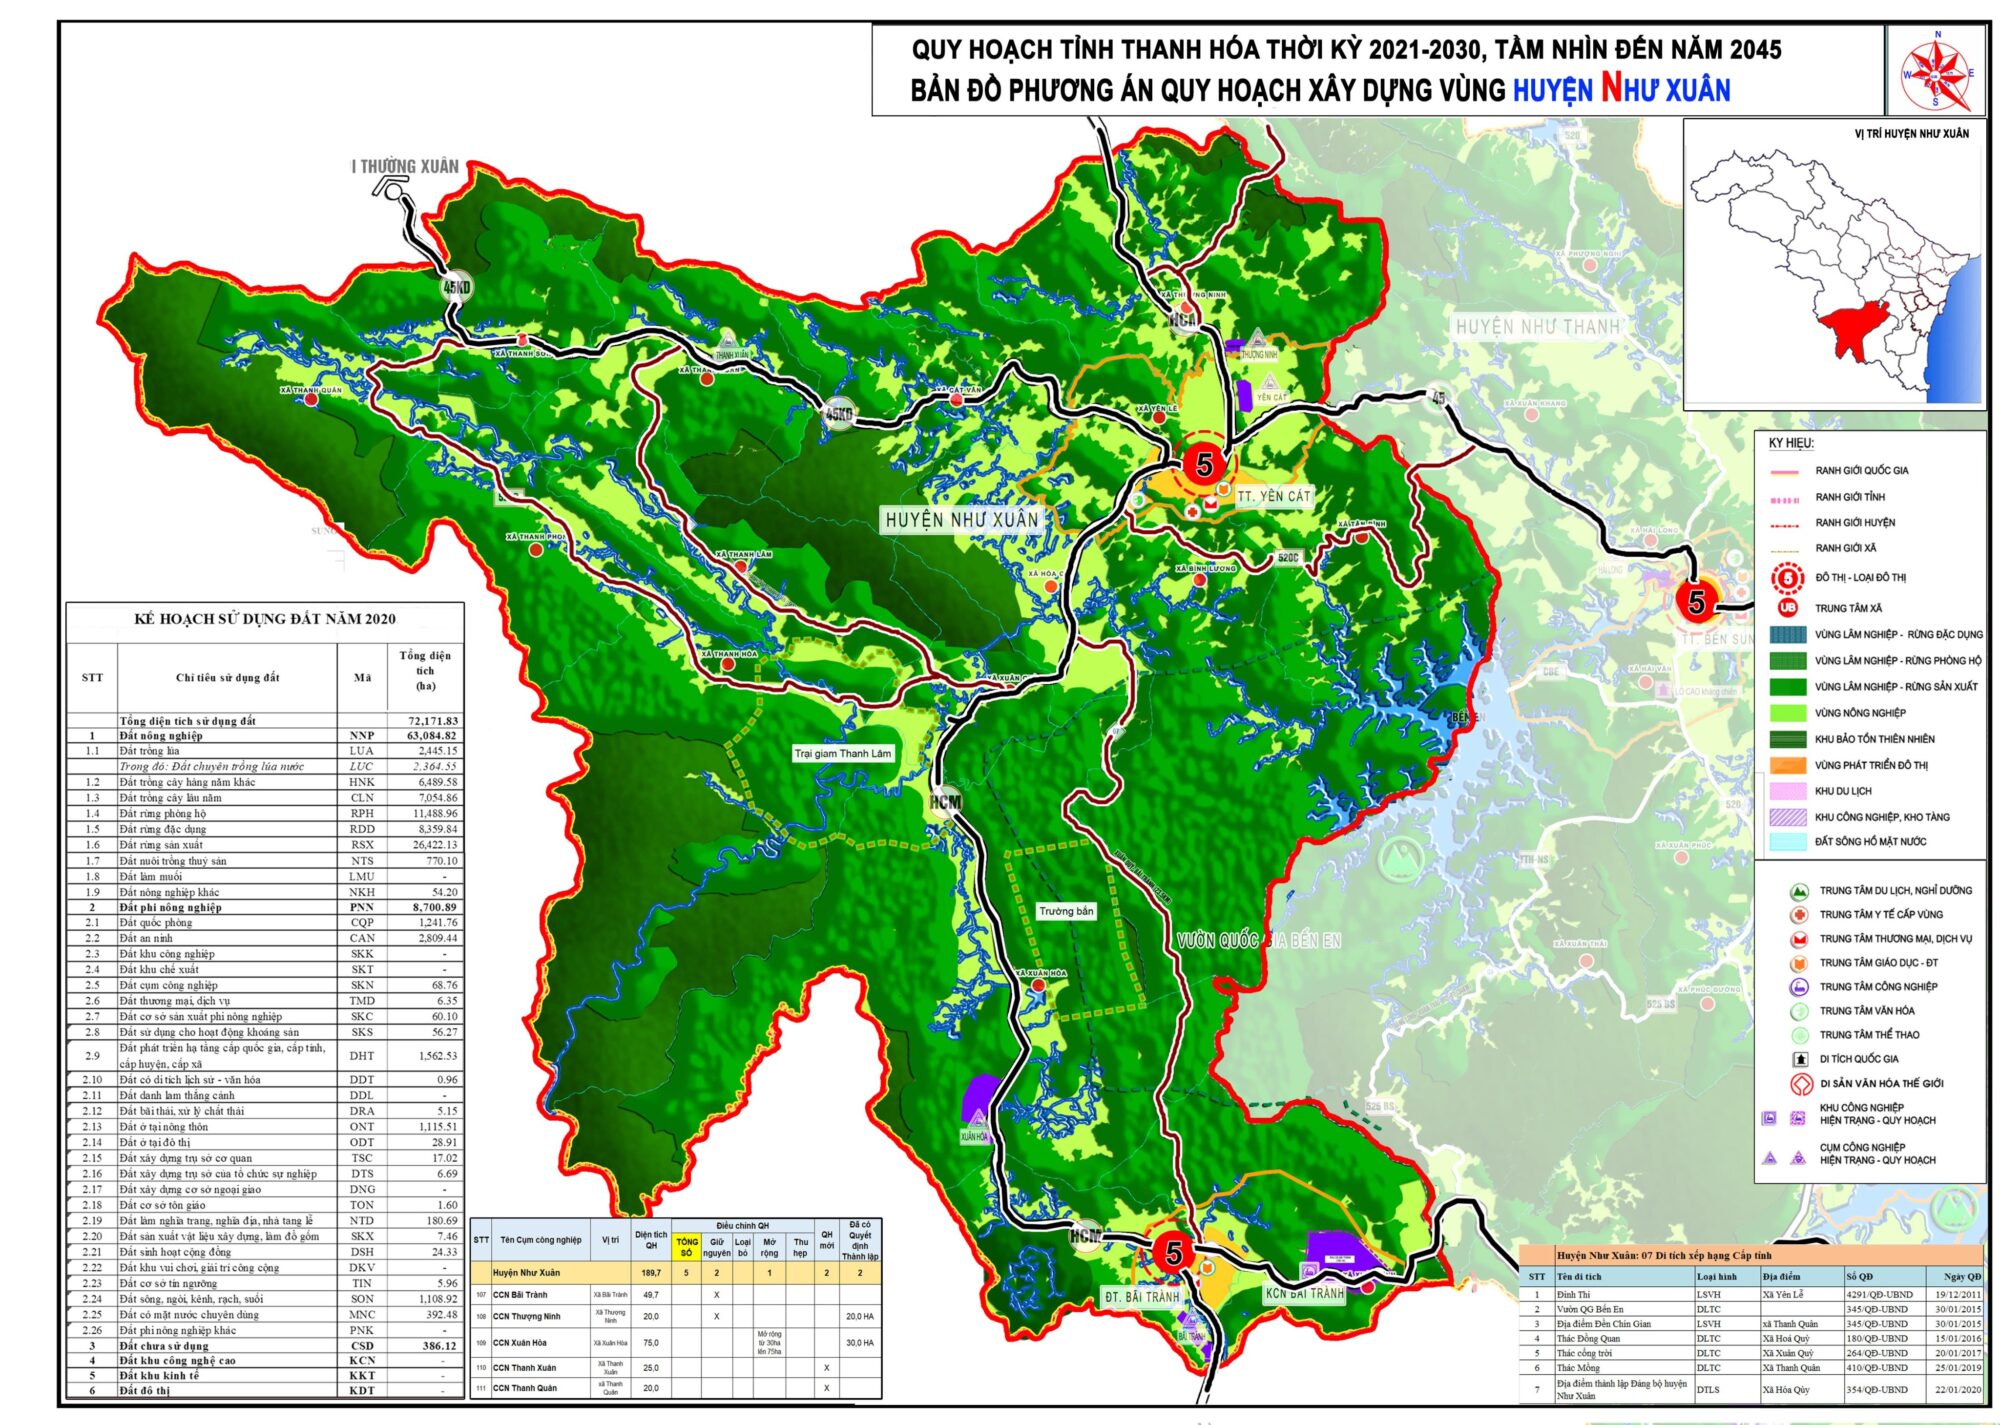 Bản đồ quy hoạch huyện Như Xuân, tỉnh Thanh Hóa đến năm 2030